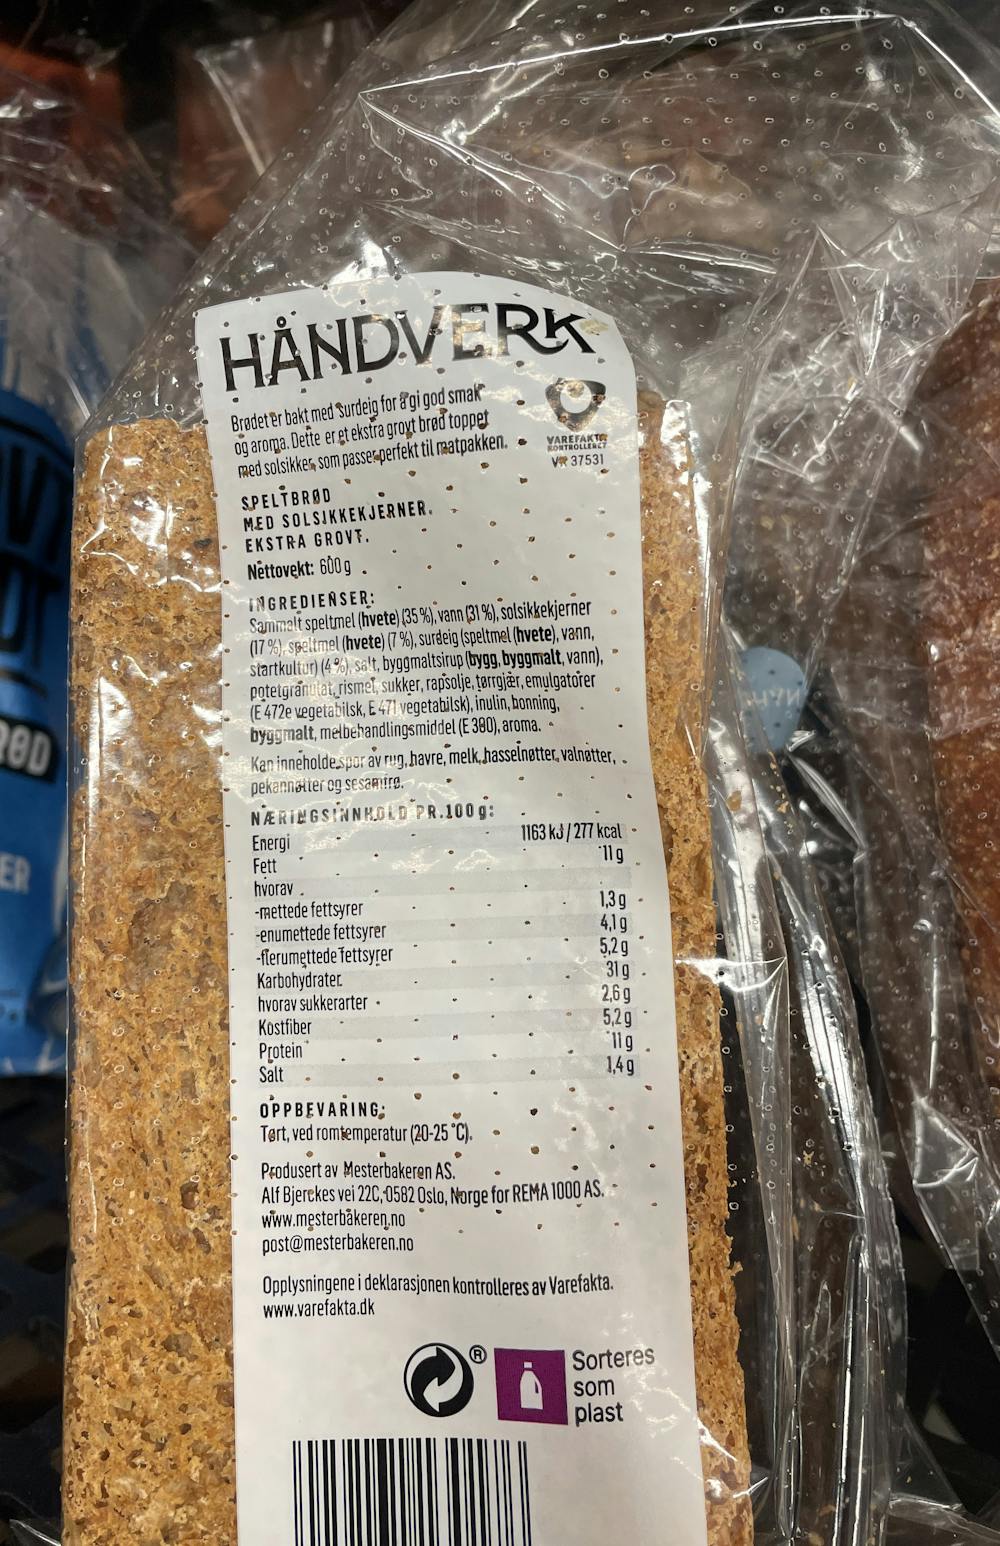 Ingrediensliste - Håndverk, ekstra grovt speltbrød, Mesterbakeren